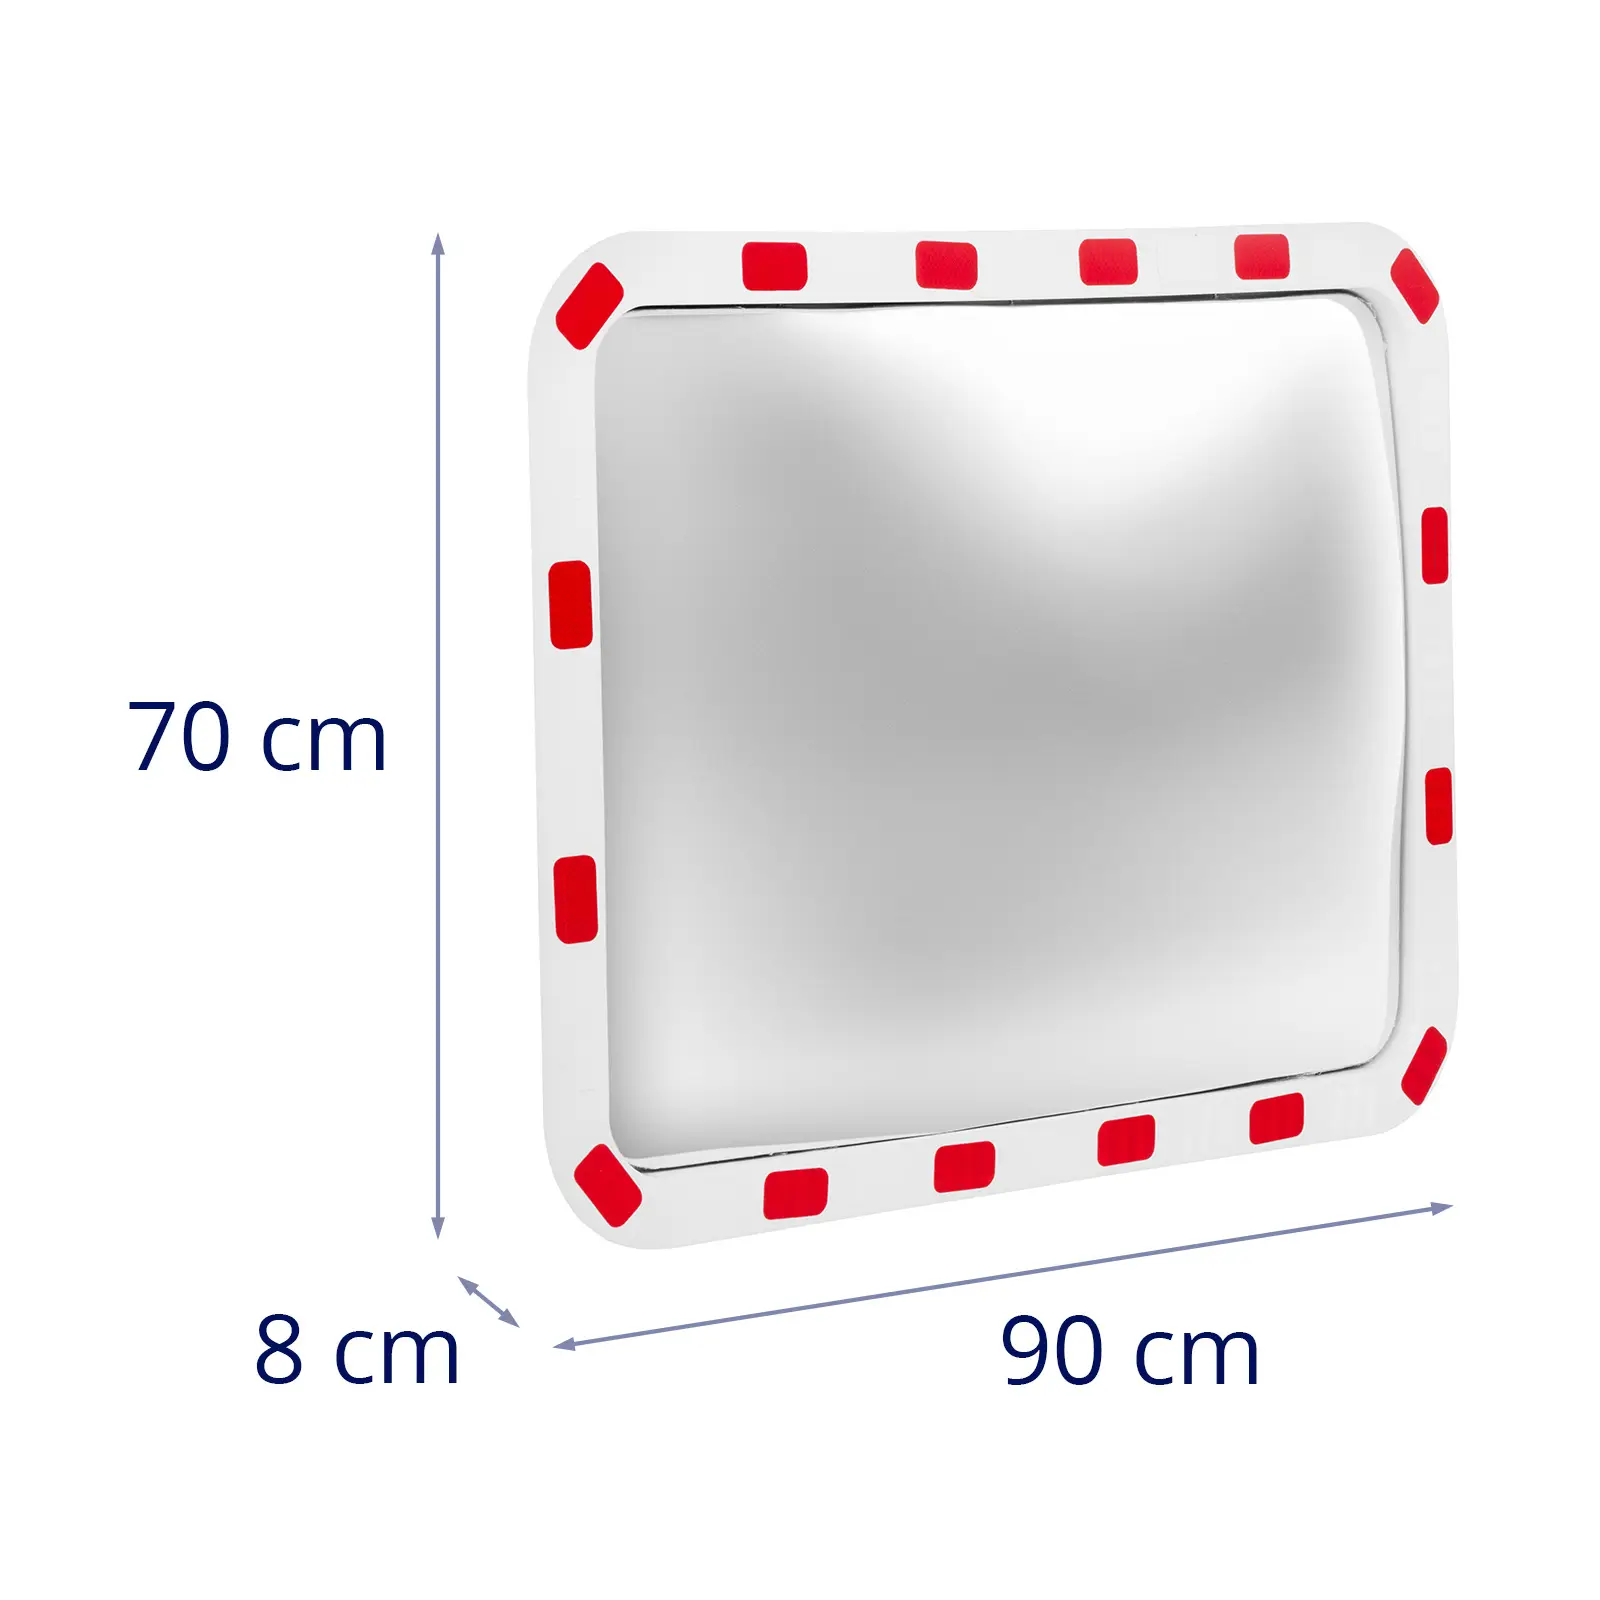 Közlekedési tükör - 60 x 80 x 8 cm - 130° - téglalap alakú